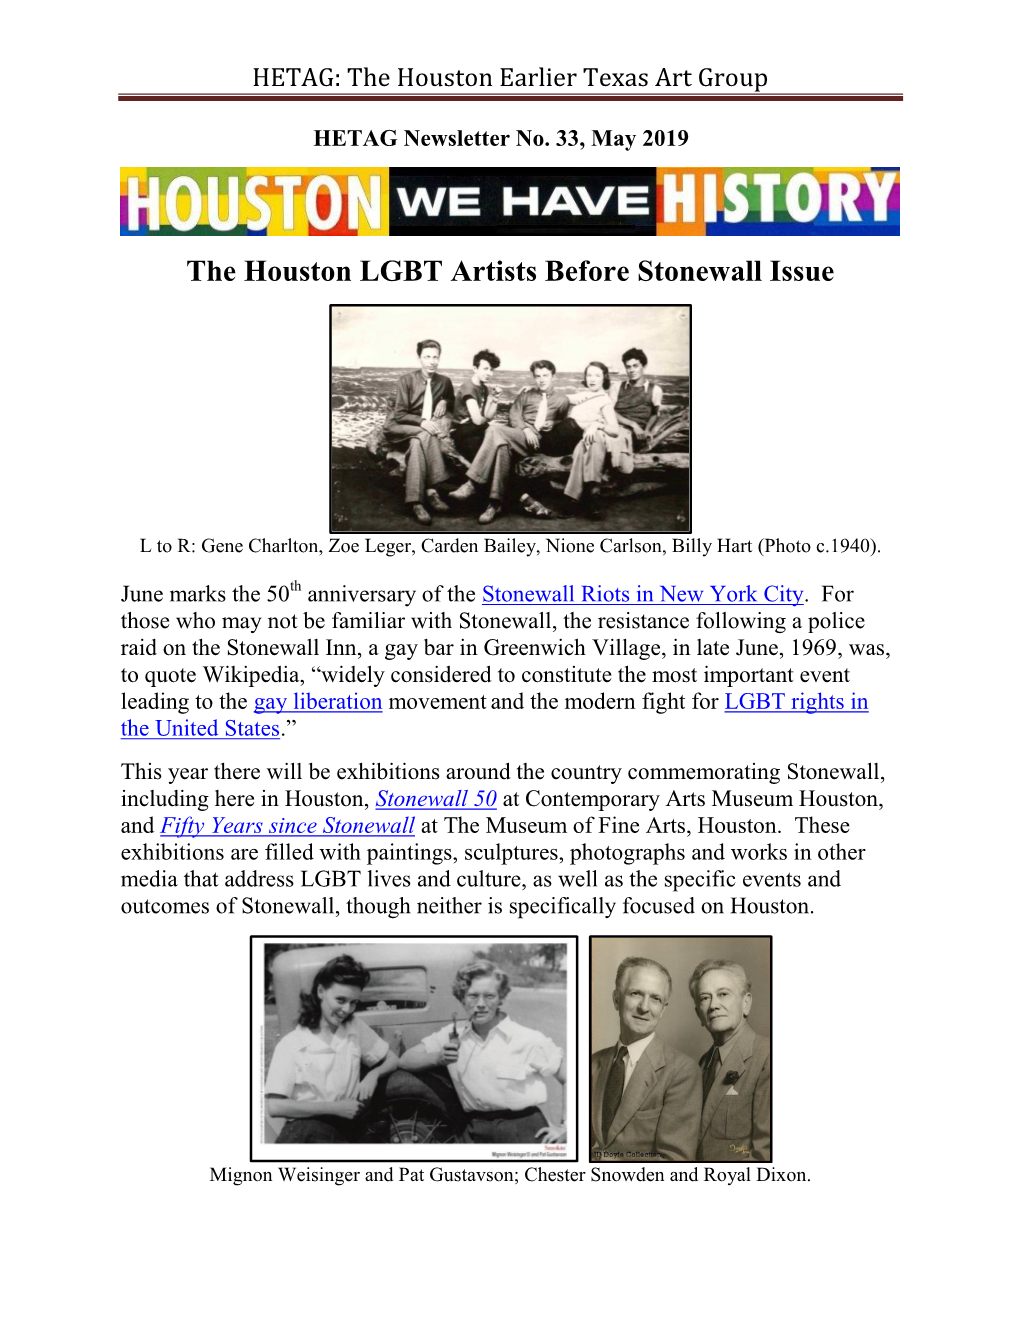 HETAG: the Houston Earlier Texas Art Group